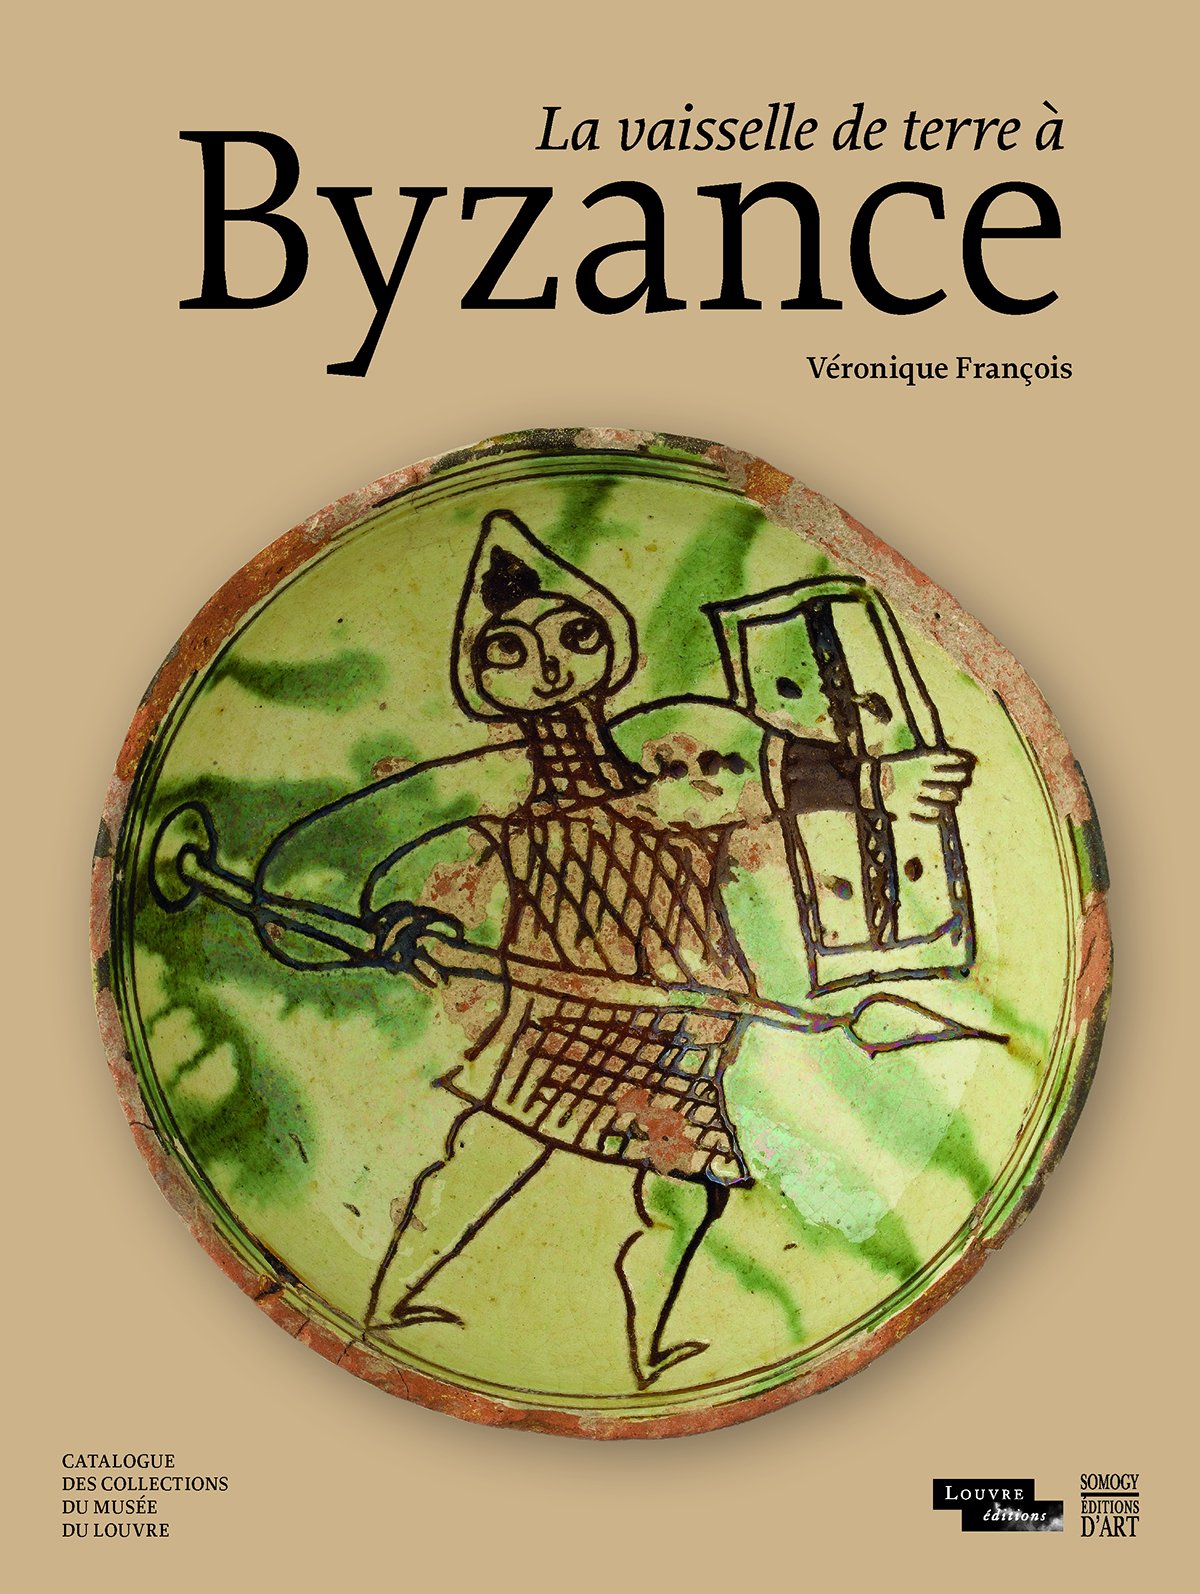 La vaisselle de terre à Byzance. Catalogue des collections du musée du Louvre, 2017, 375 p.